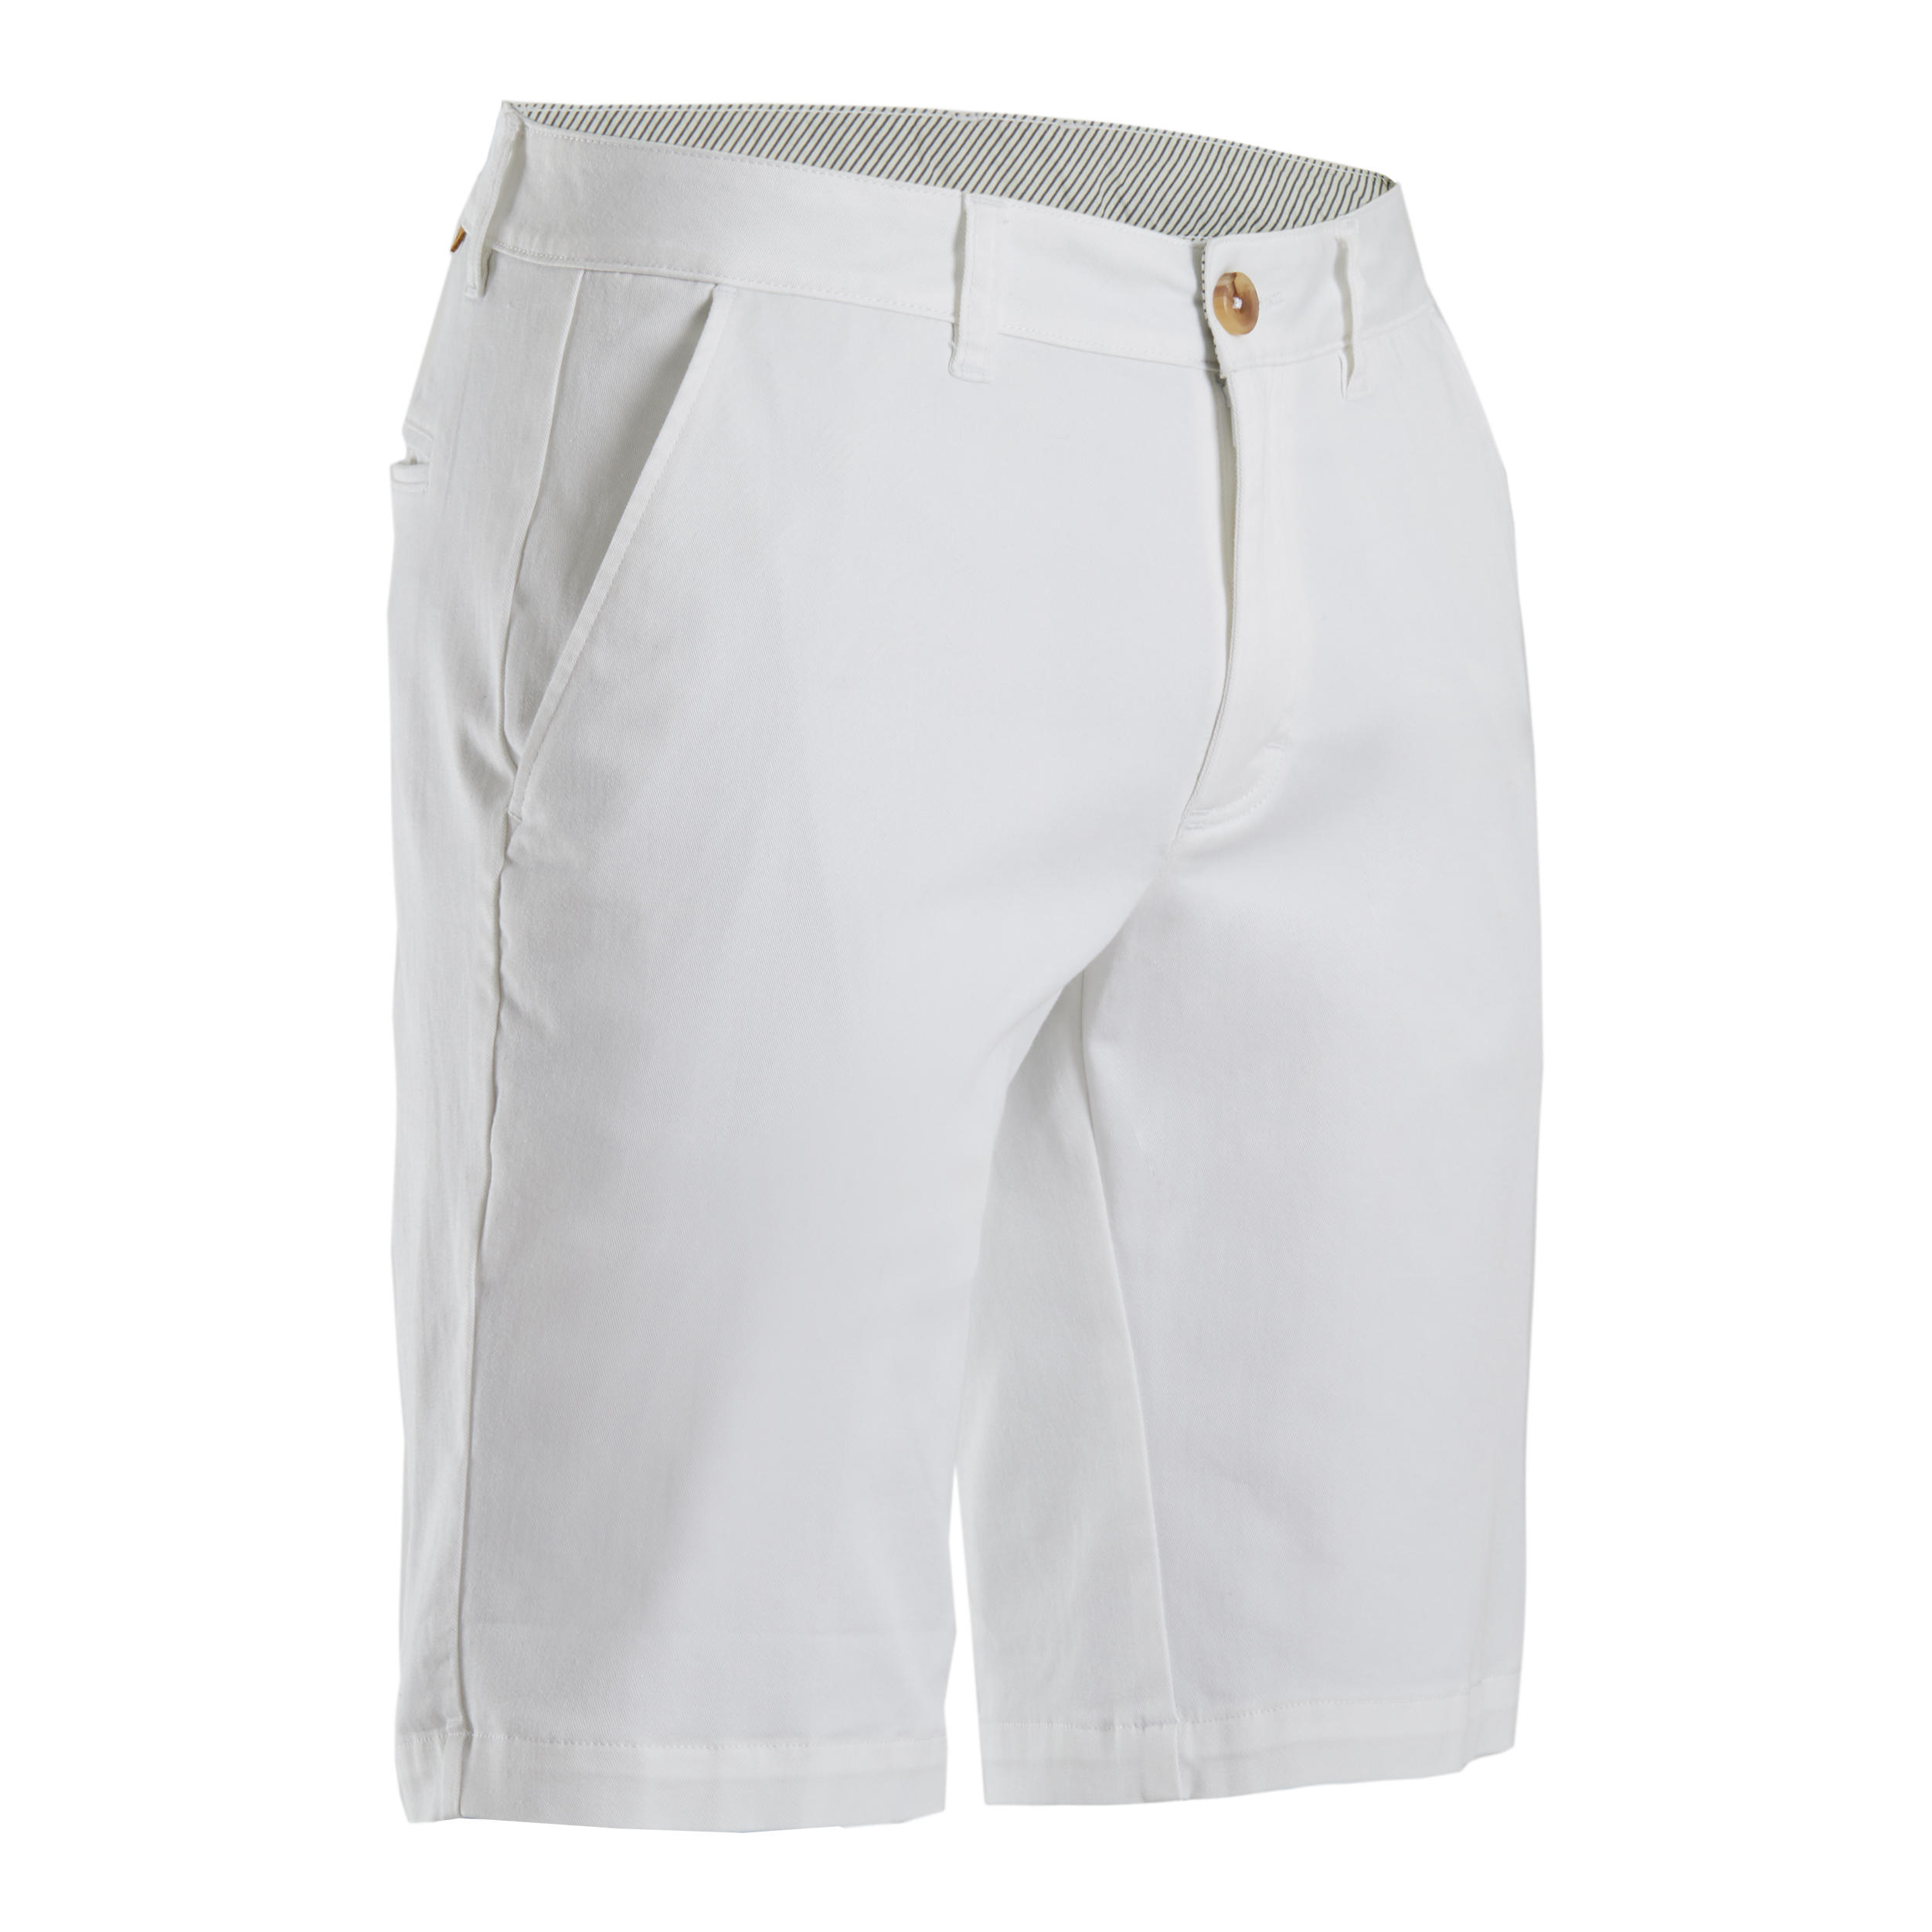 Men's Golf Shorts - White